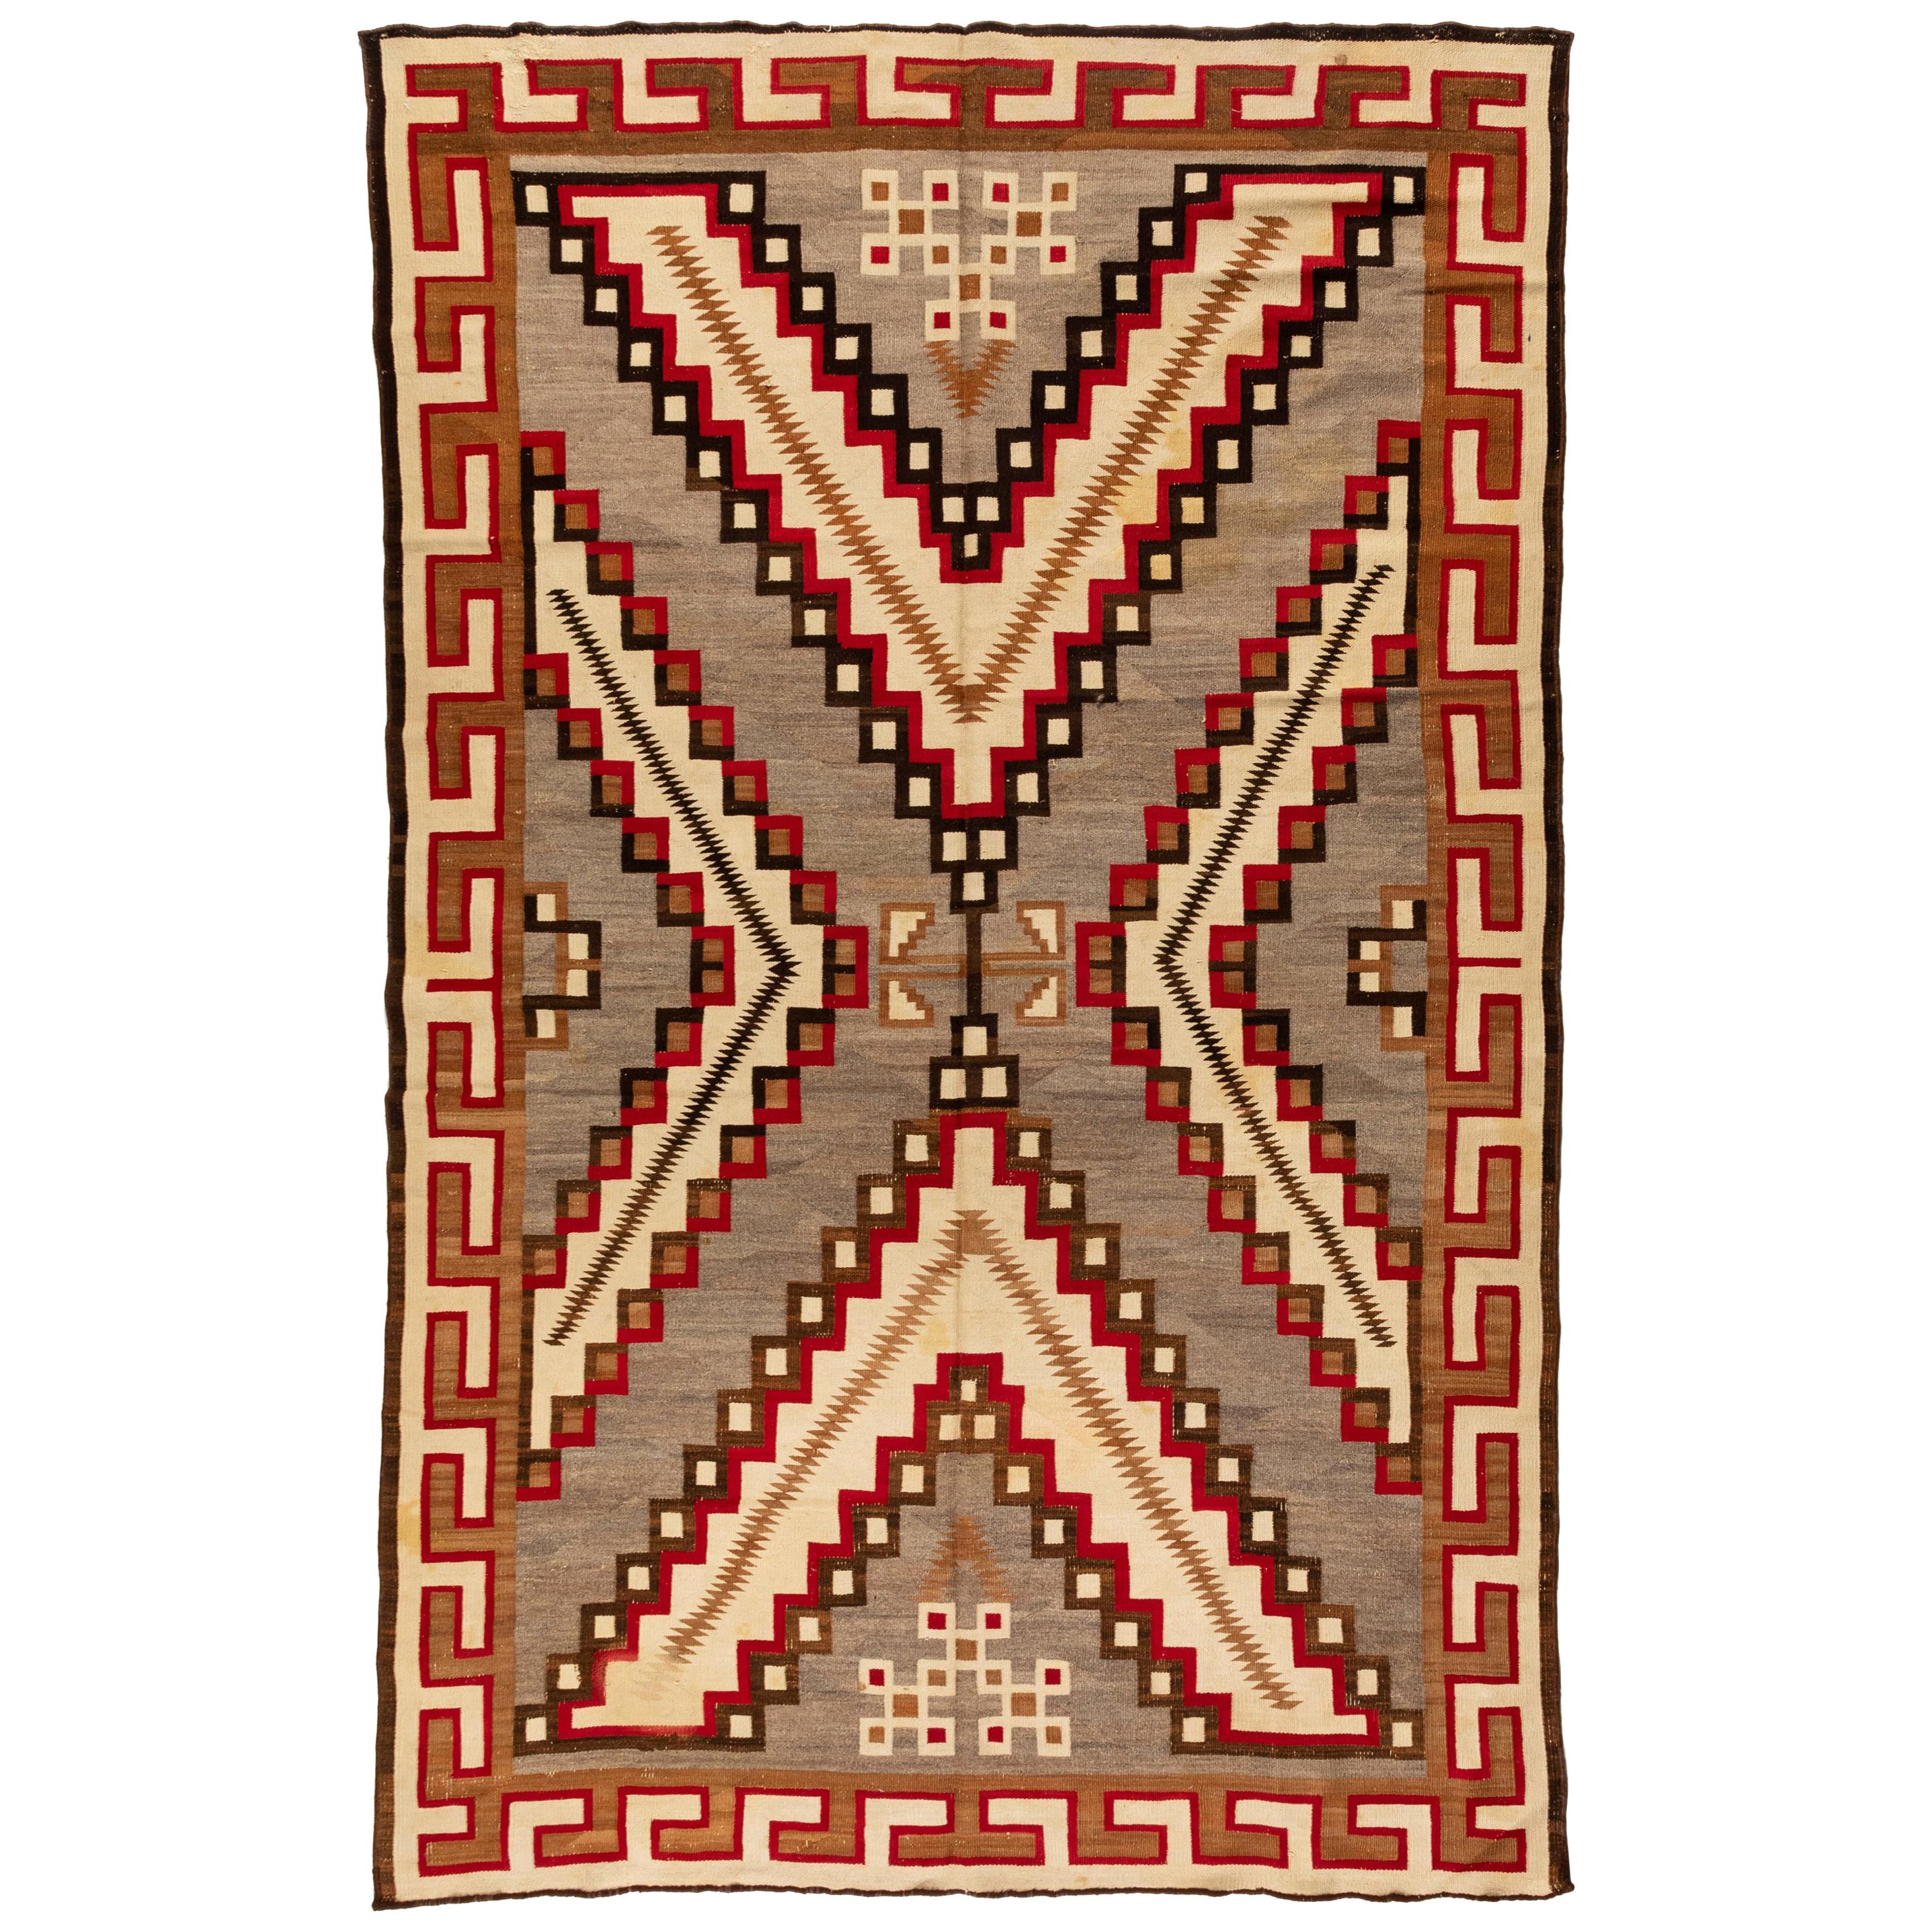 Grand tapis Navajo amérindien ancien géométrique gris et ivoire, vers les années 1920-1930